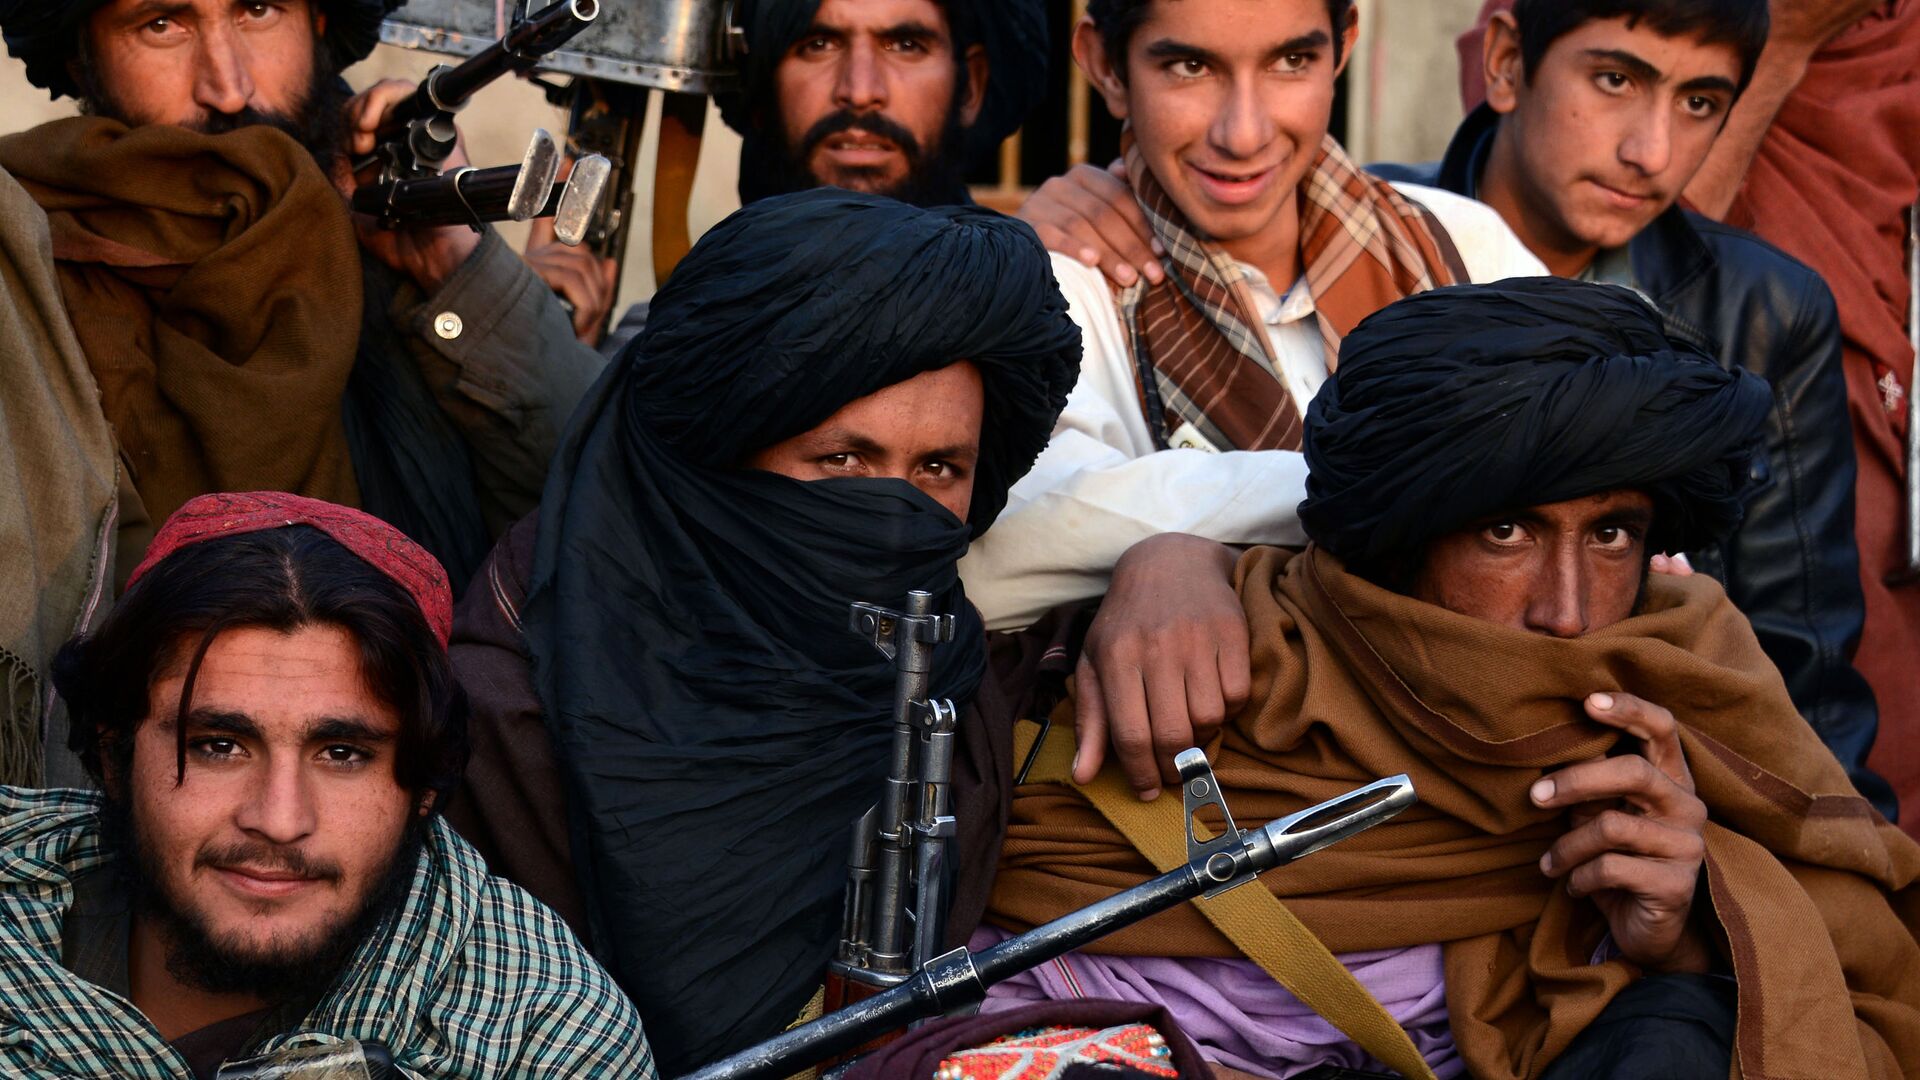 پاكستان ادعای افغانستان را در مورد پناه دادن به جنگجویان طالبان تكذيب كرد - اسپوتنیک افغانستان  , 1920, 07.08.2021